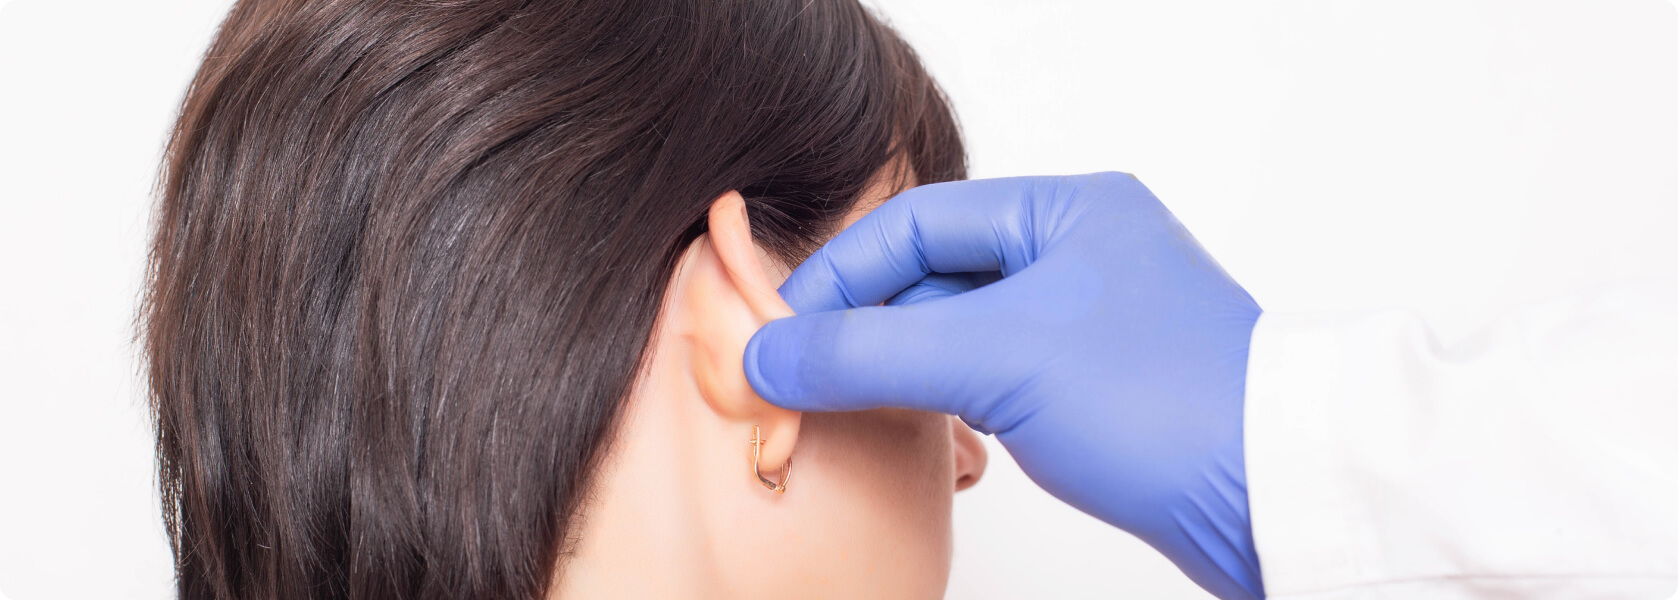 Ohren anlegen - Wie verläuft die Fadenmethode zum Ohren anlegen?